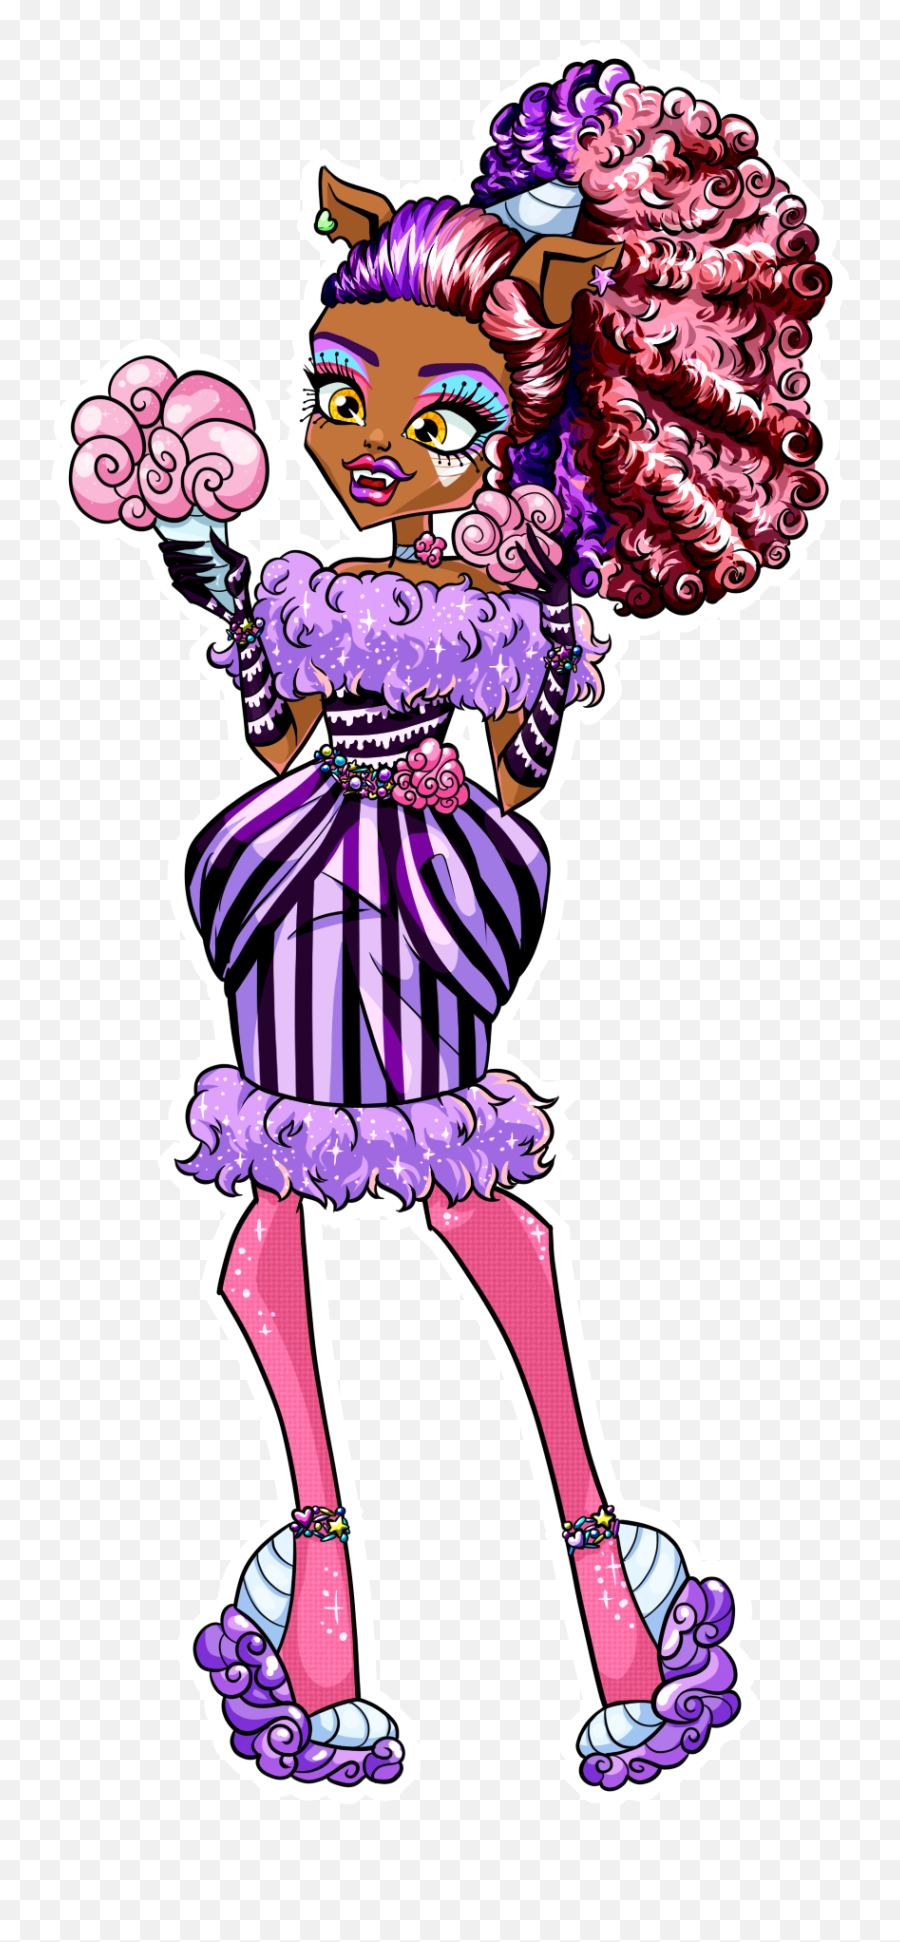 Images - Monster High Sweet Screams Dolls Emoji,Chocobo Emoji